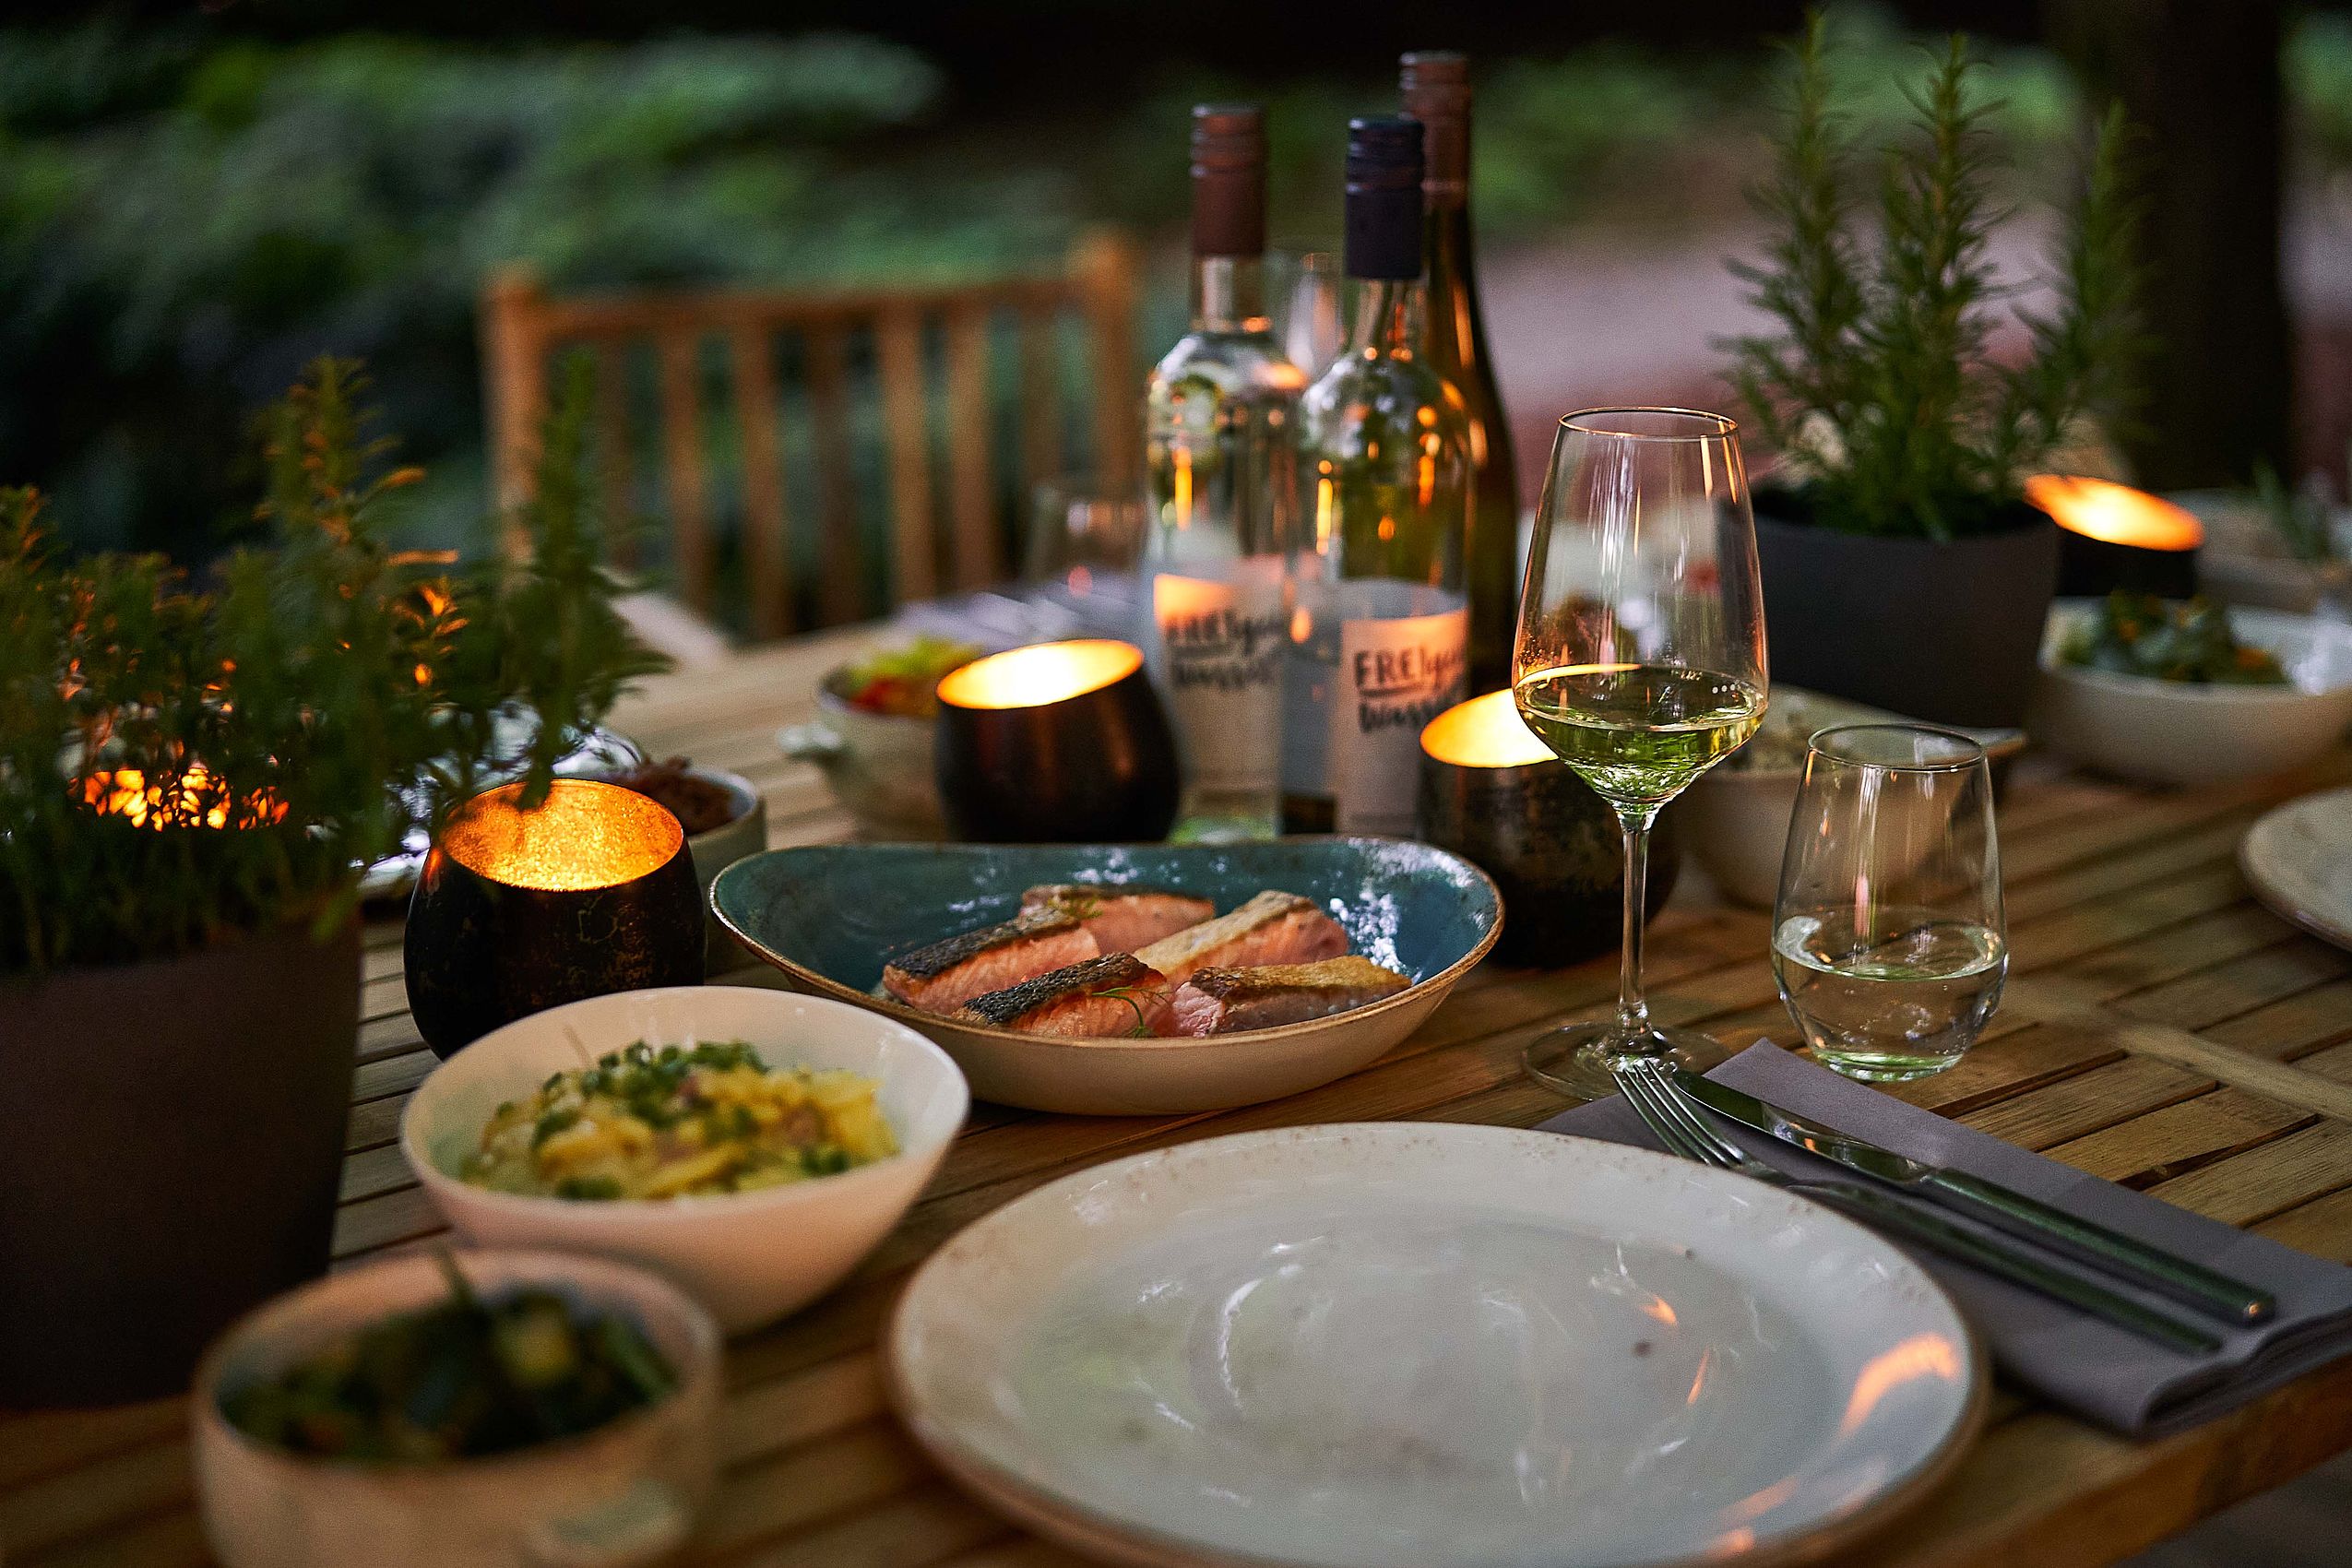 Gebratener Lachs und ein Glas Weißwein auf einem von Kerzen beleuchteten Tisch